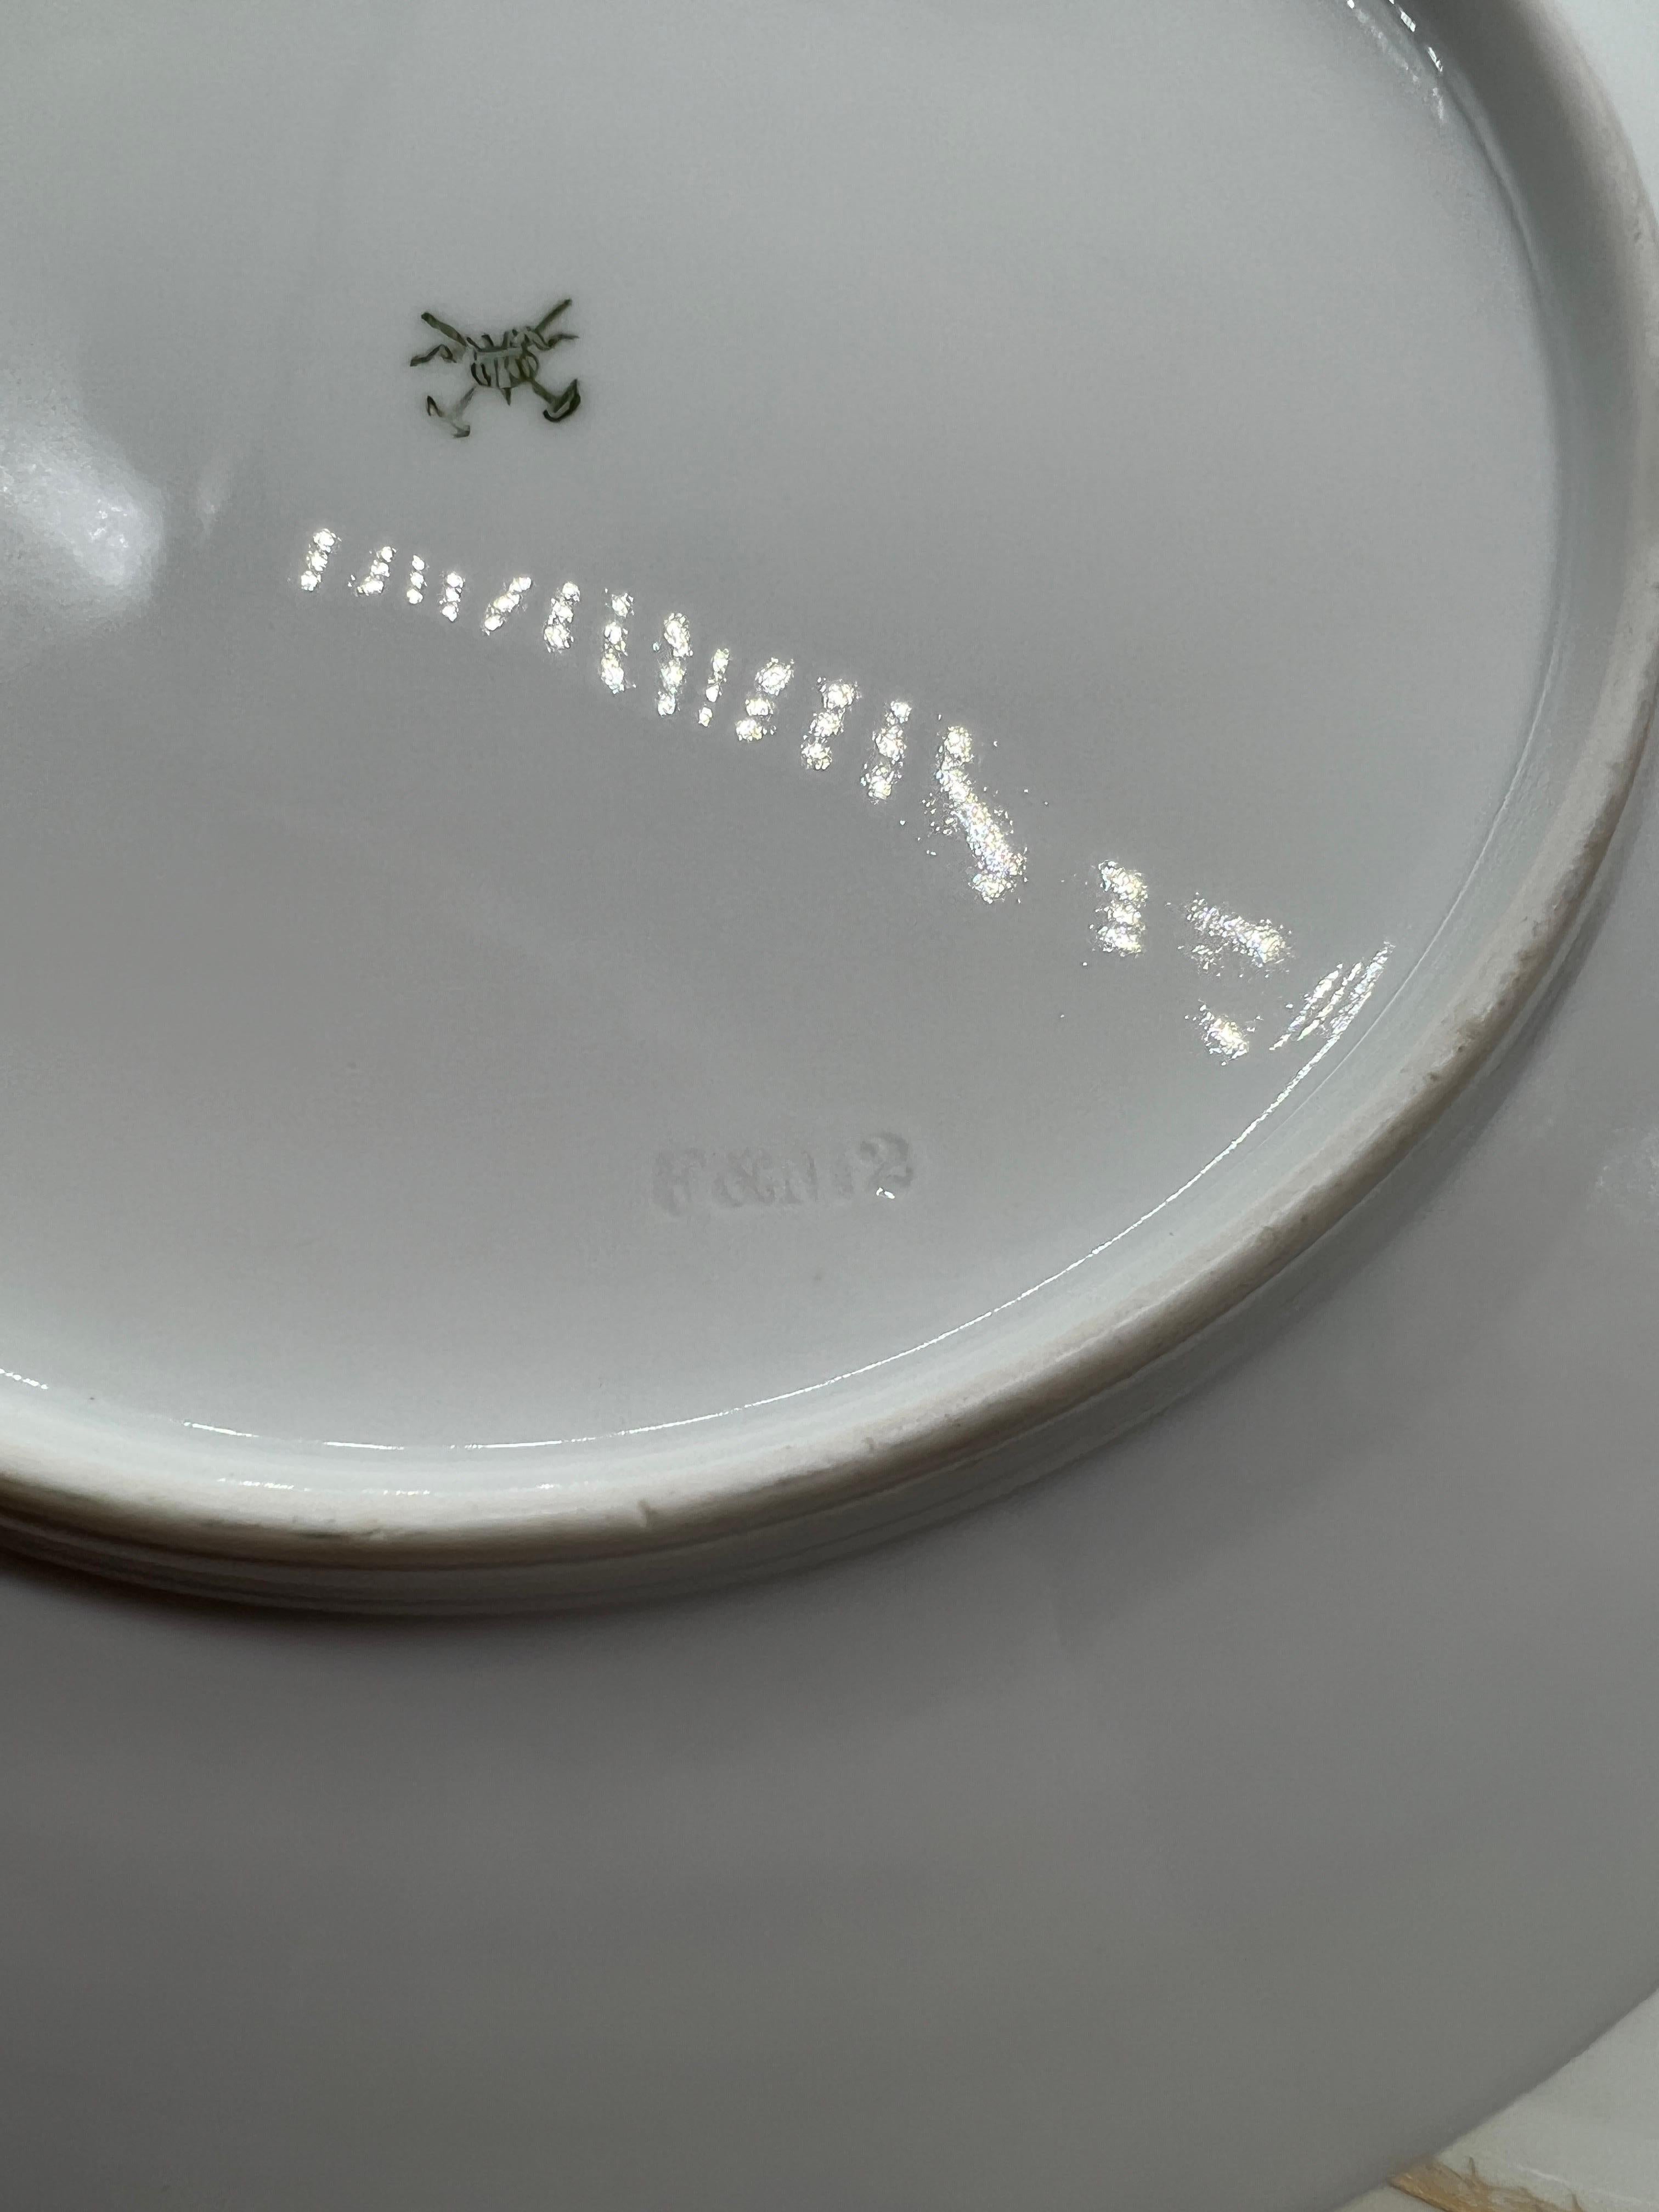 (10) Ten Fischer & Mieg Pirkenhammer Gilt Vine Encrusted Porcelain Dinner Plates For Sale 2